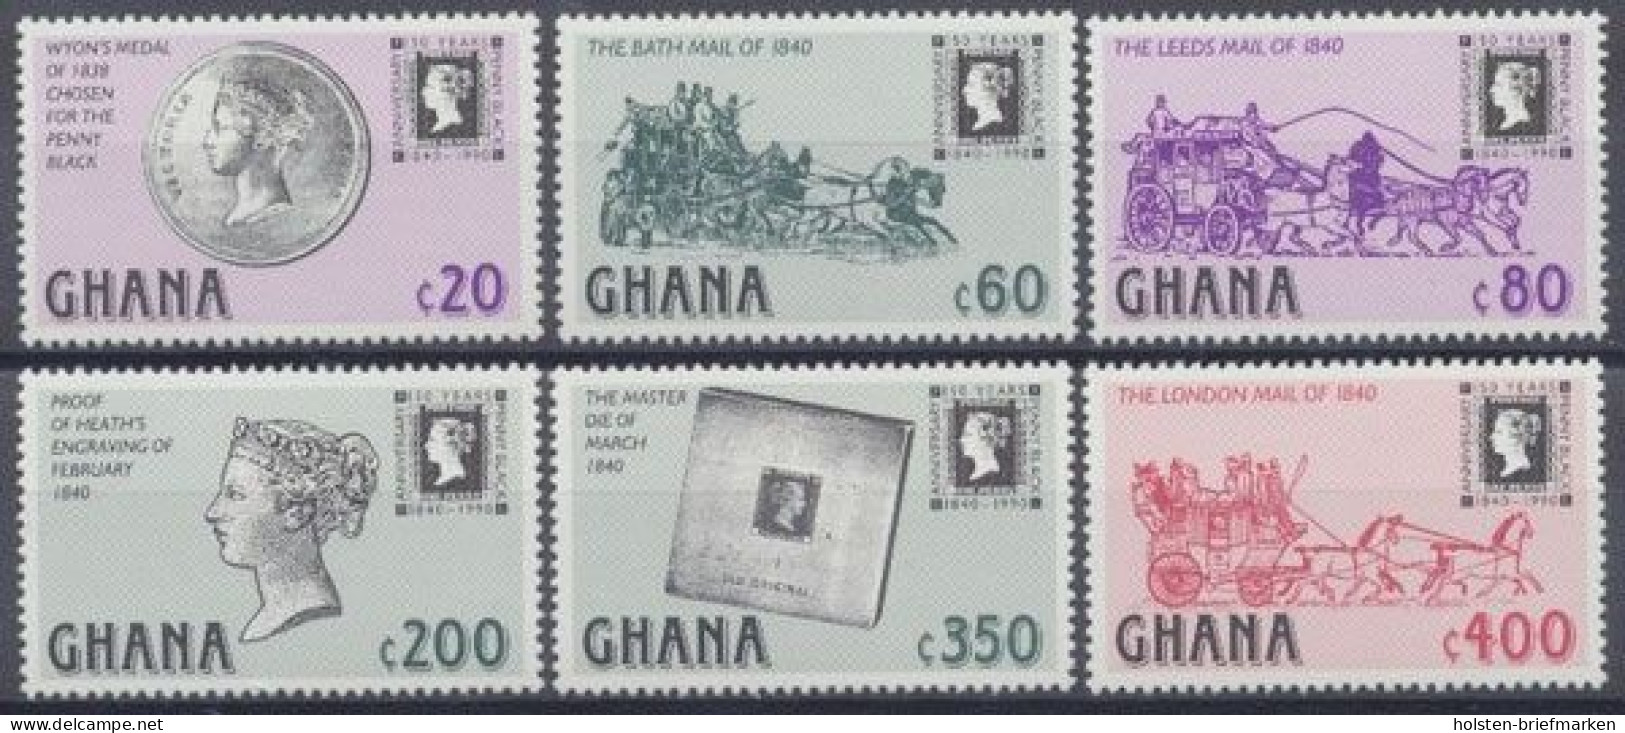 Ghana, MiNr. 1374-1379, Postfrisch - Ghana (1957-...)